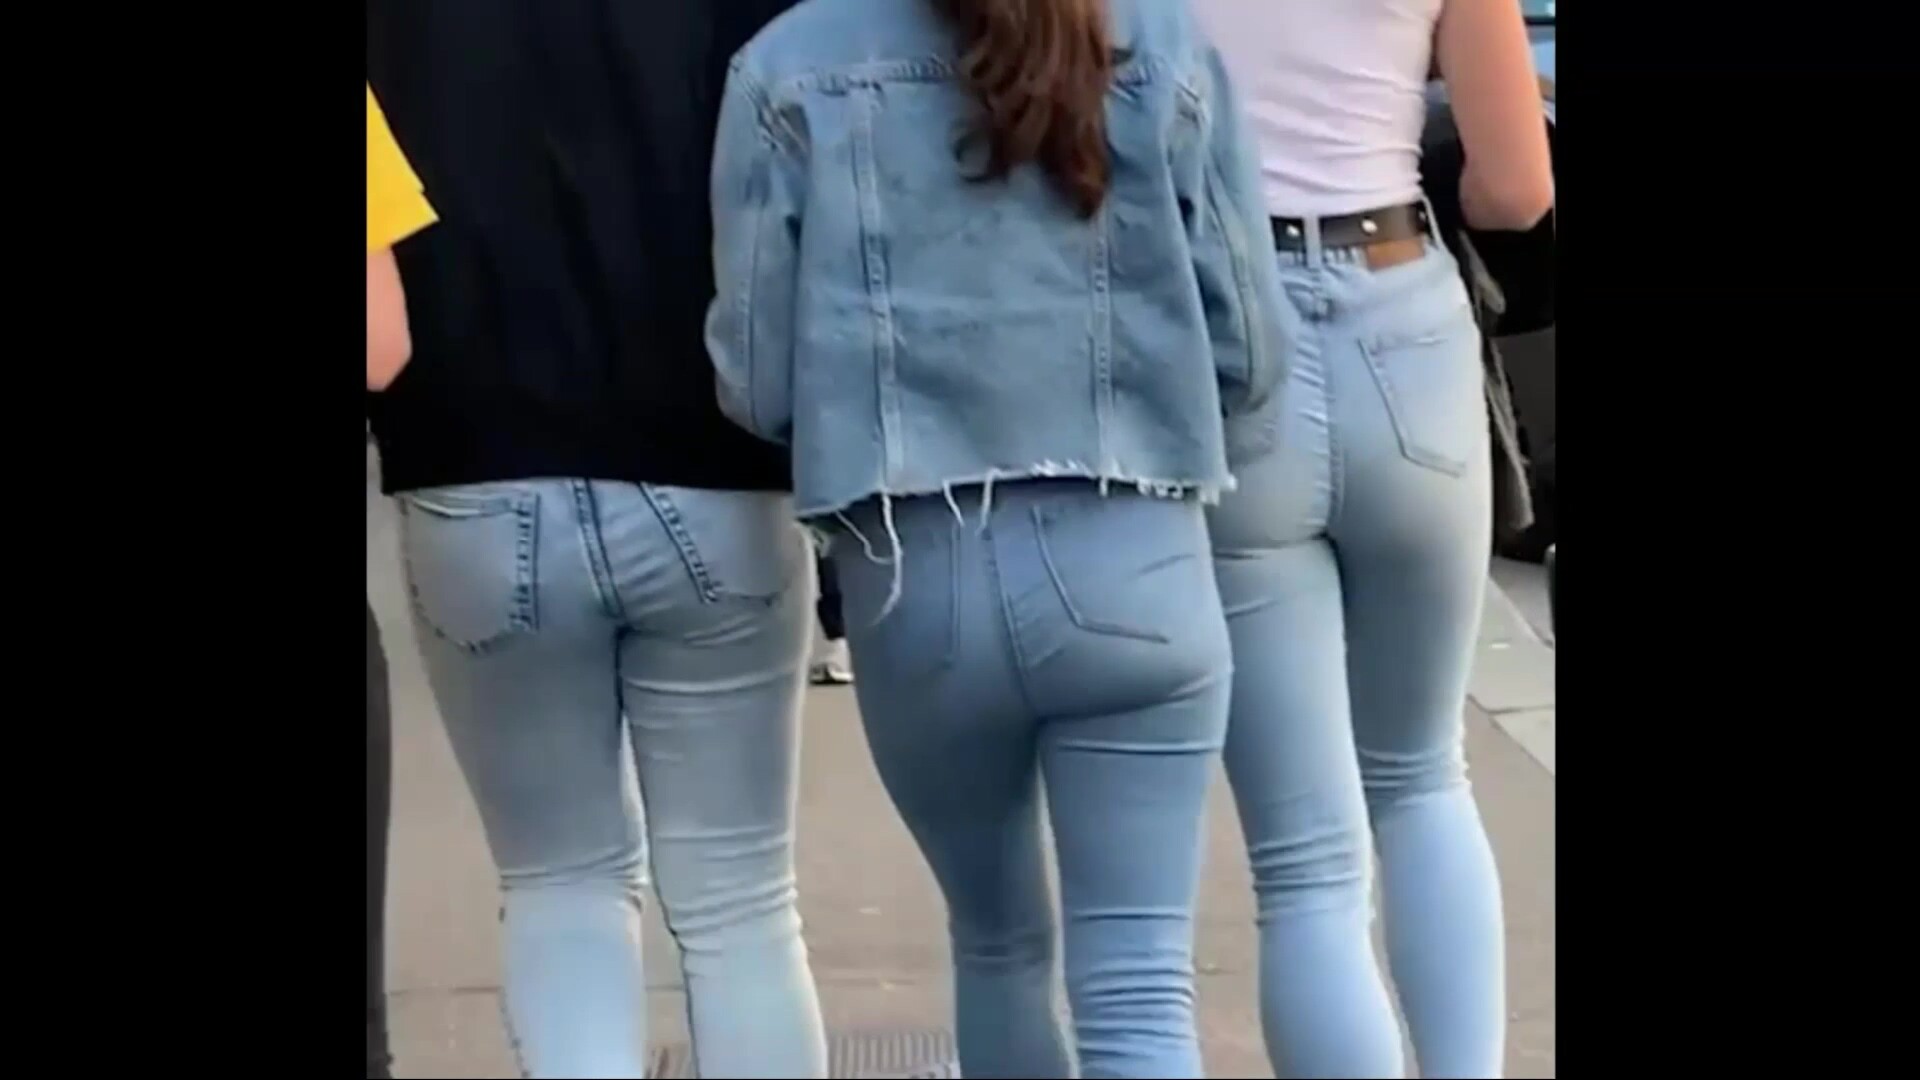 nakes moms jeans candid public voyeur Sex Images Hq